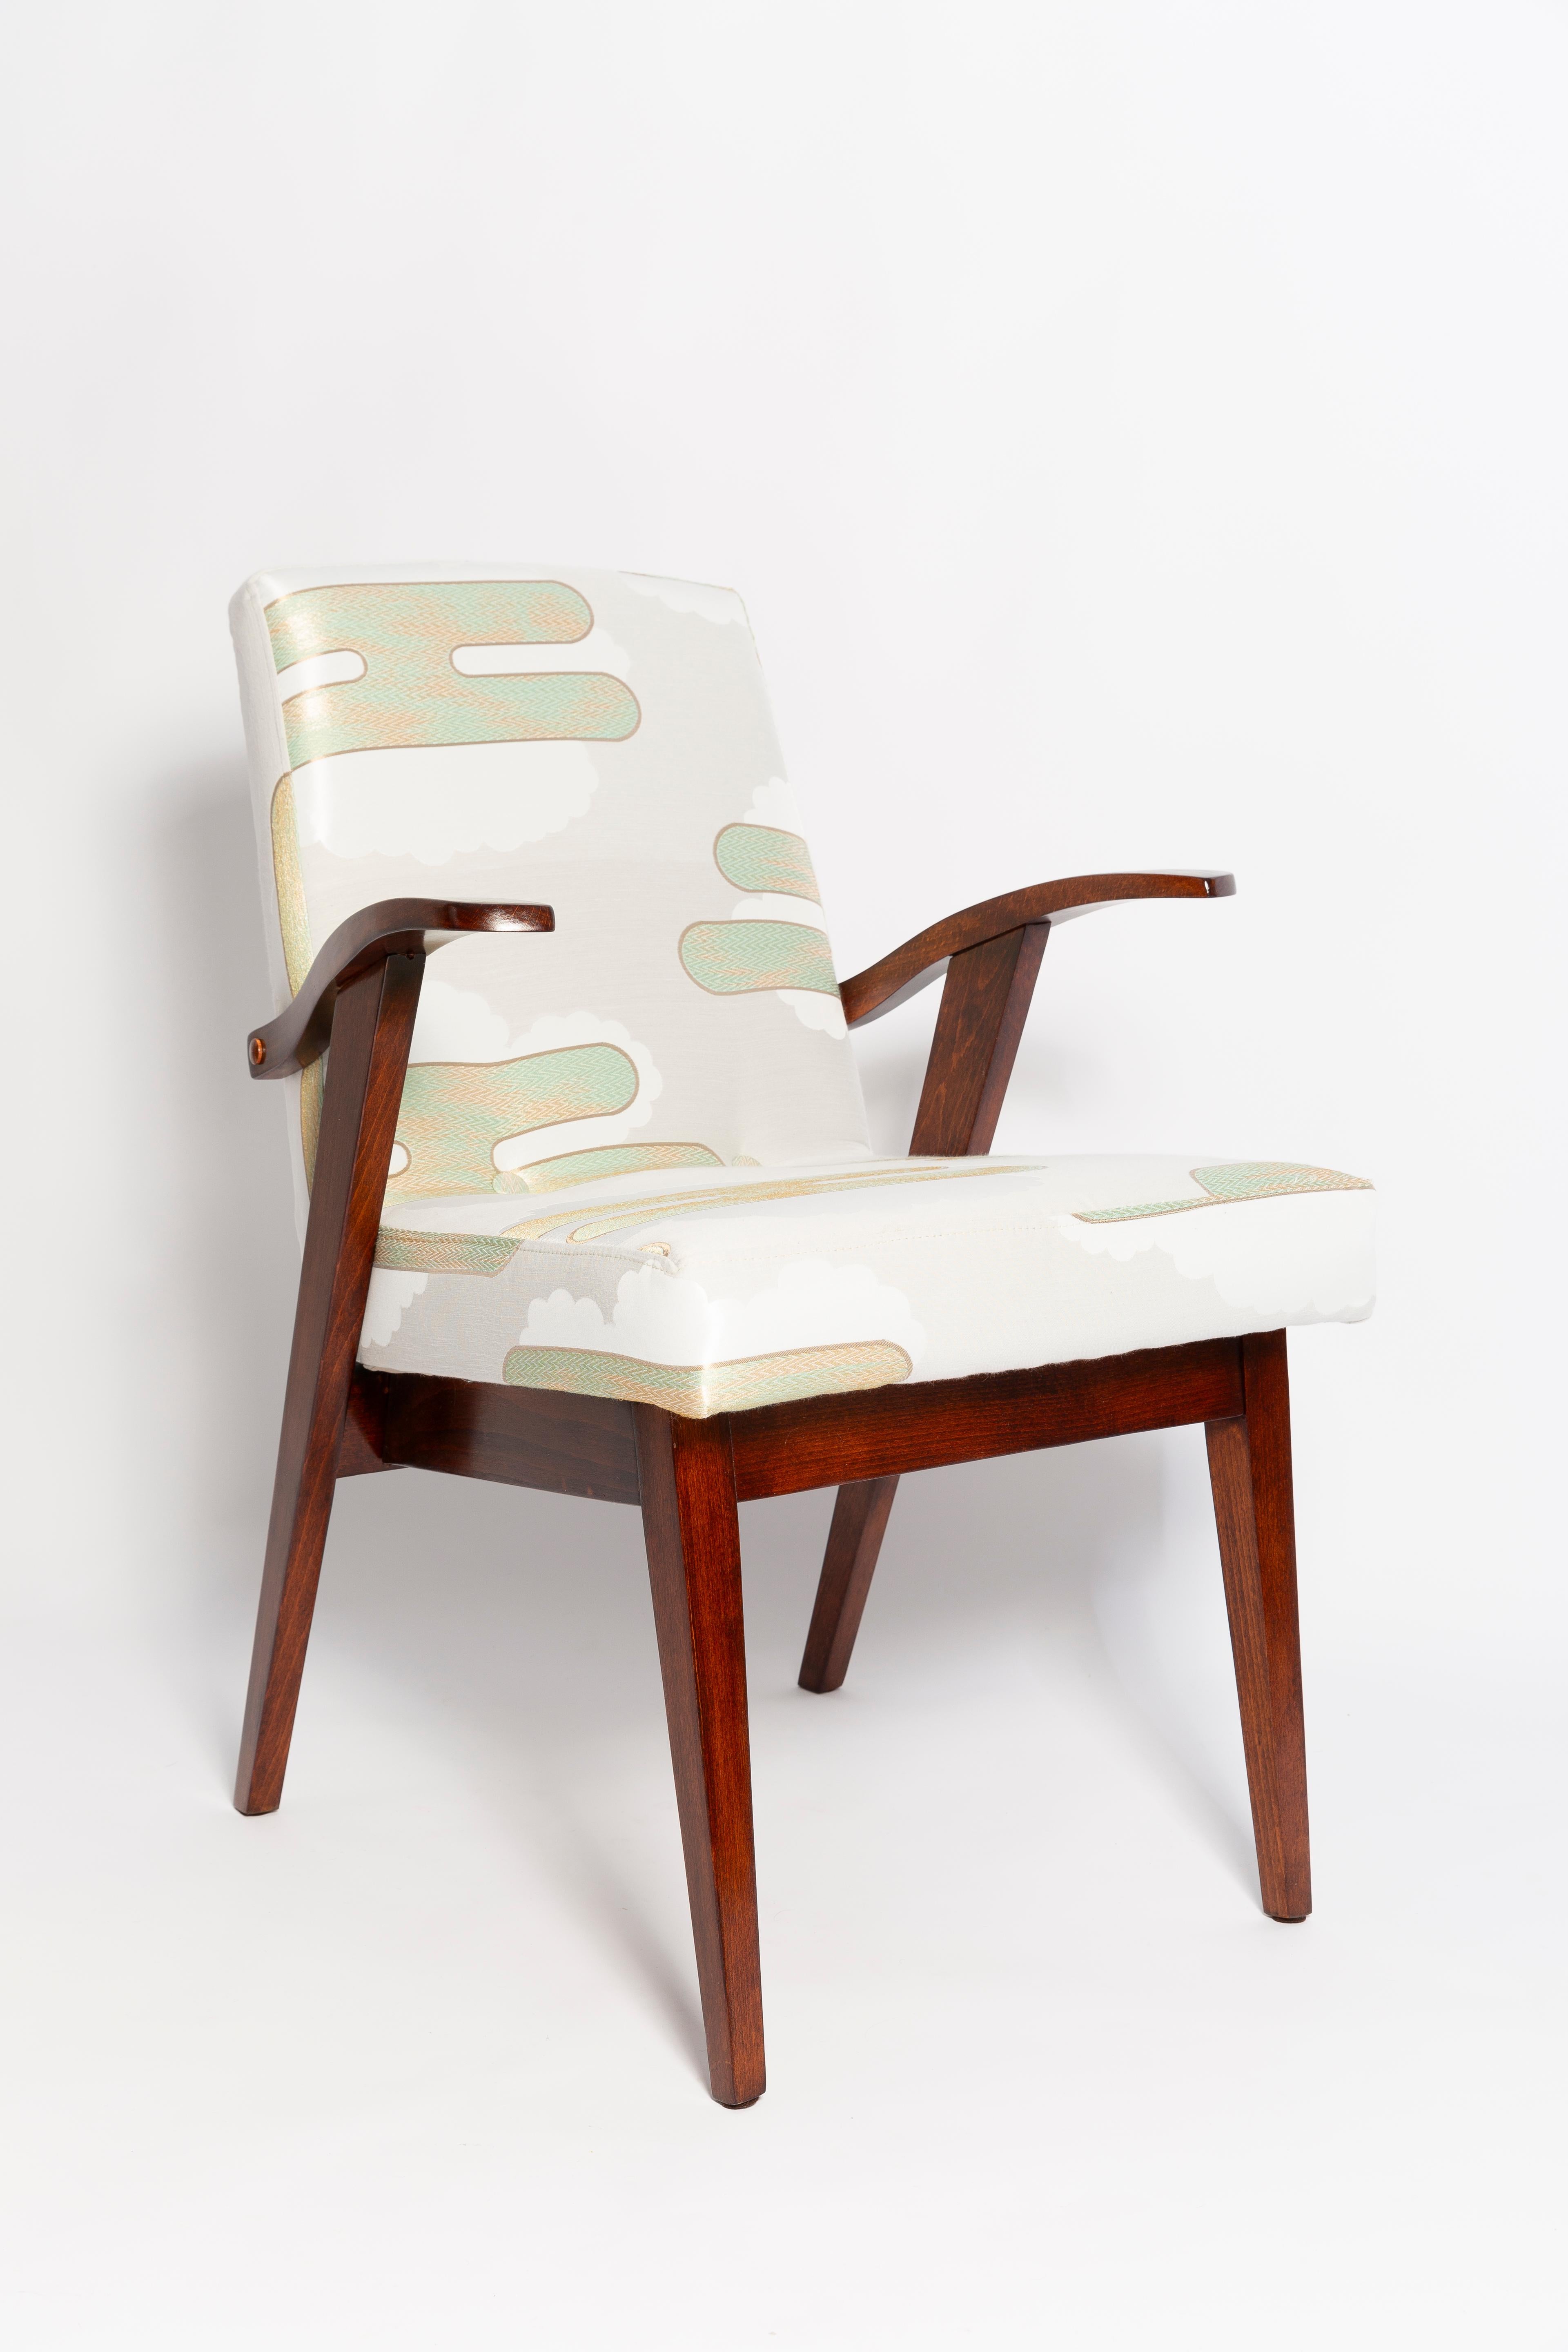 Sessel entworfen von Mieczyslaw Puchala. Dunkelbraunes Holz in Kombination mit einem mintgrünen, wunderschönen italienischen Jacquard verleiht ihm Eleganz und Noblesse. 

Der Stuhl wurde einer kompletten Tischler- und Polstermöbelrenovierung